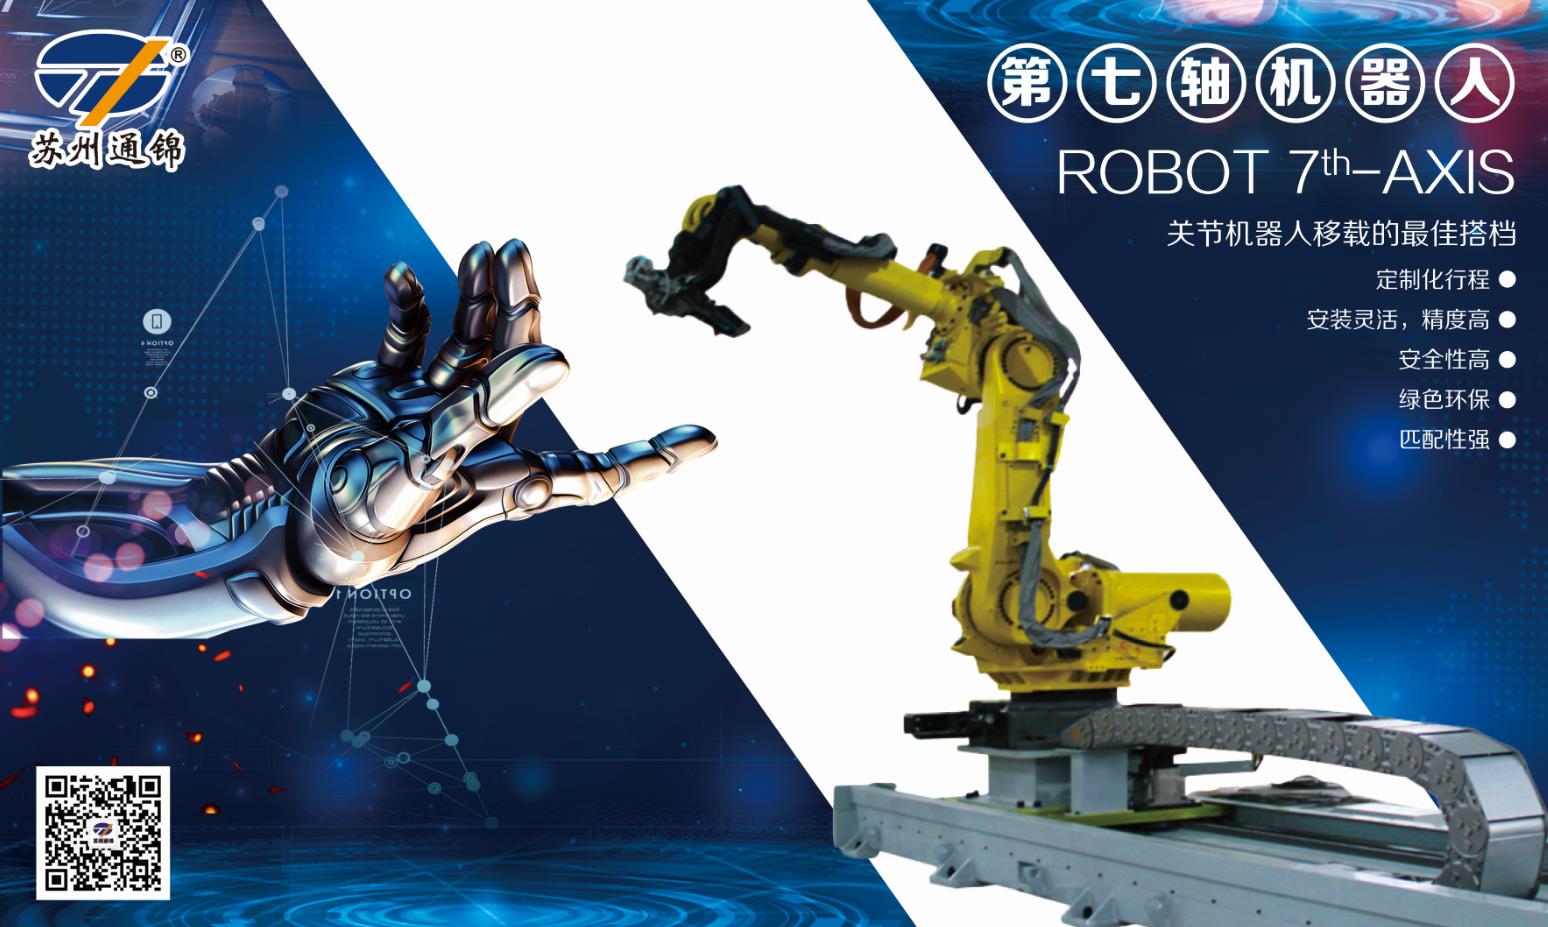 【展會專欄】2019中國工博會機器人展，我們蓄勢待發！